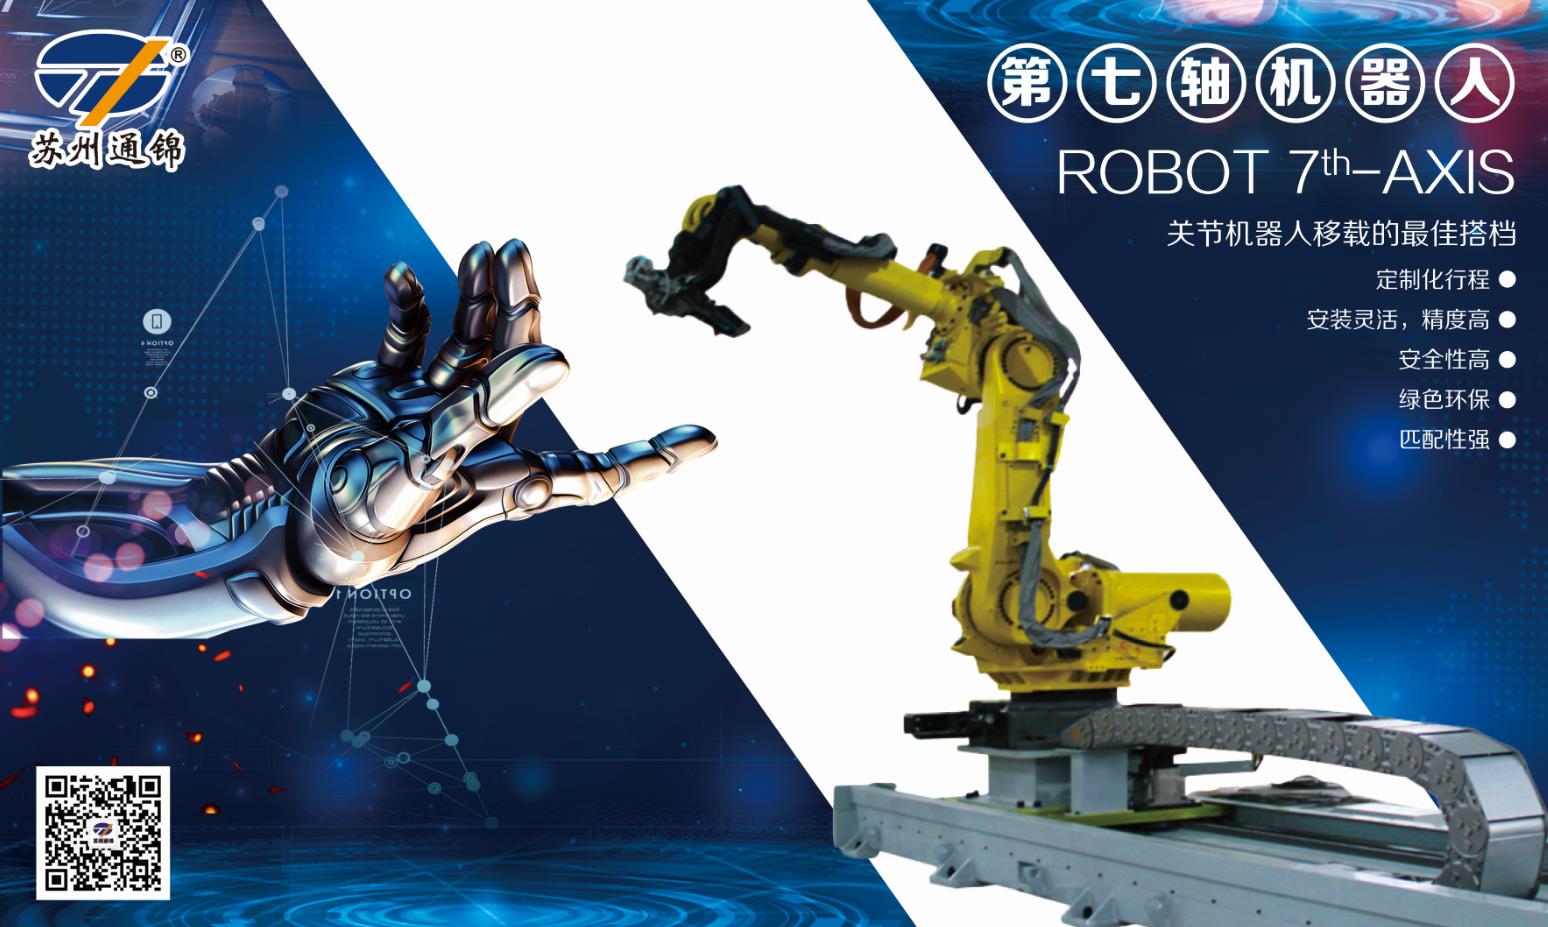 【展會專欄】2019中國工博會機器人展，我們蓄勢待發！